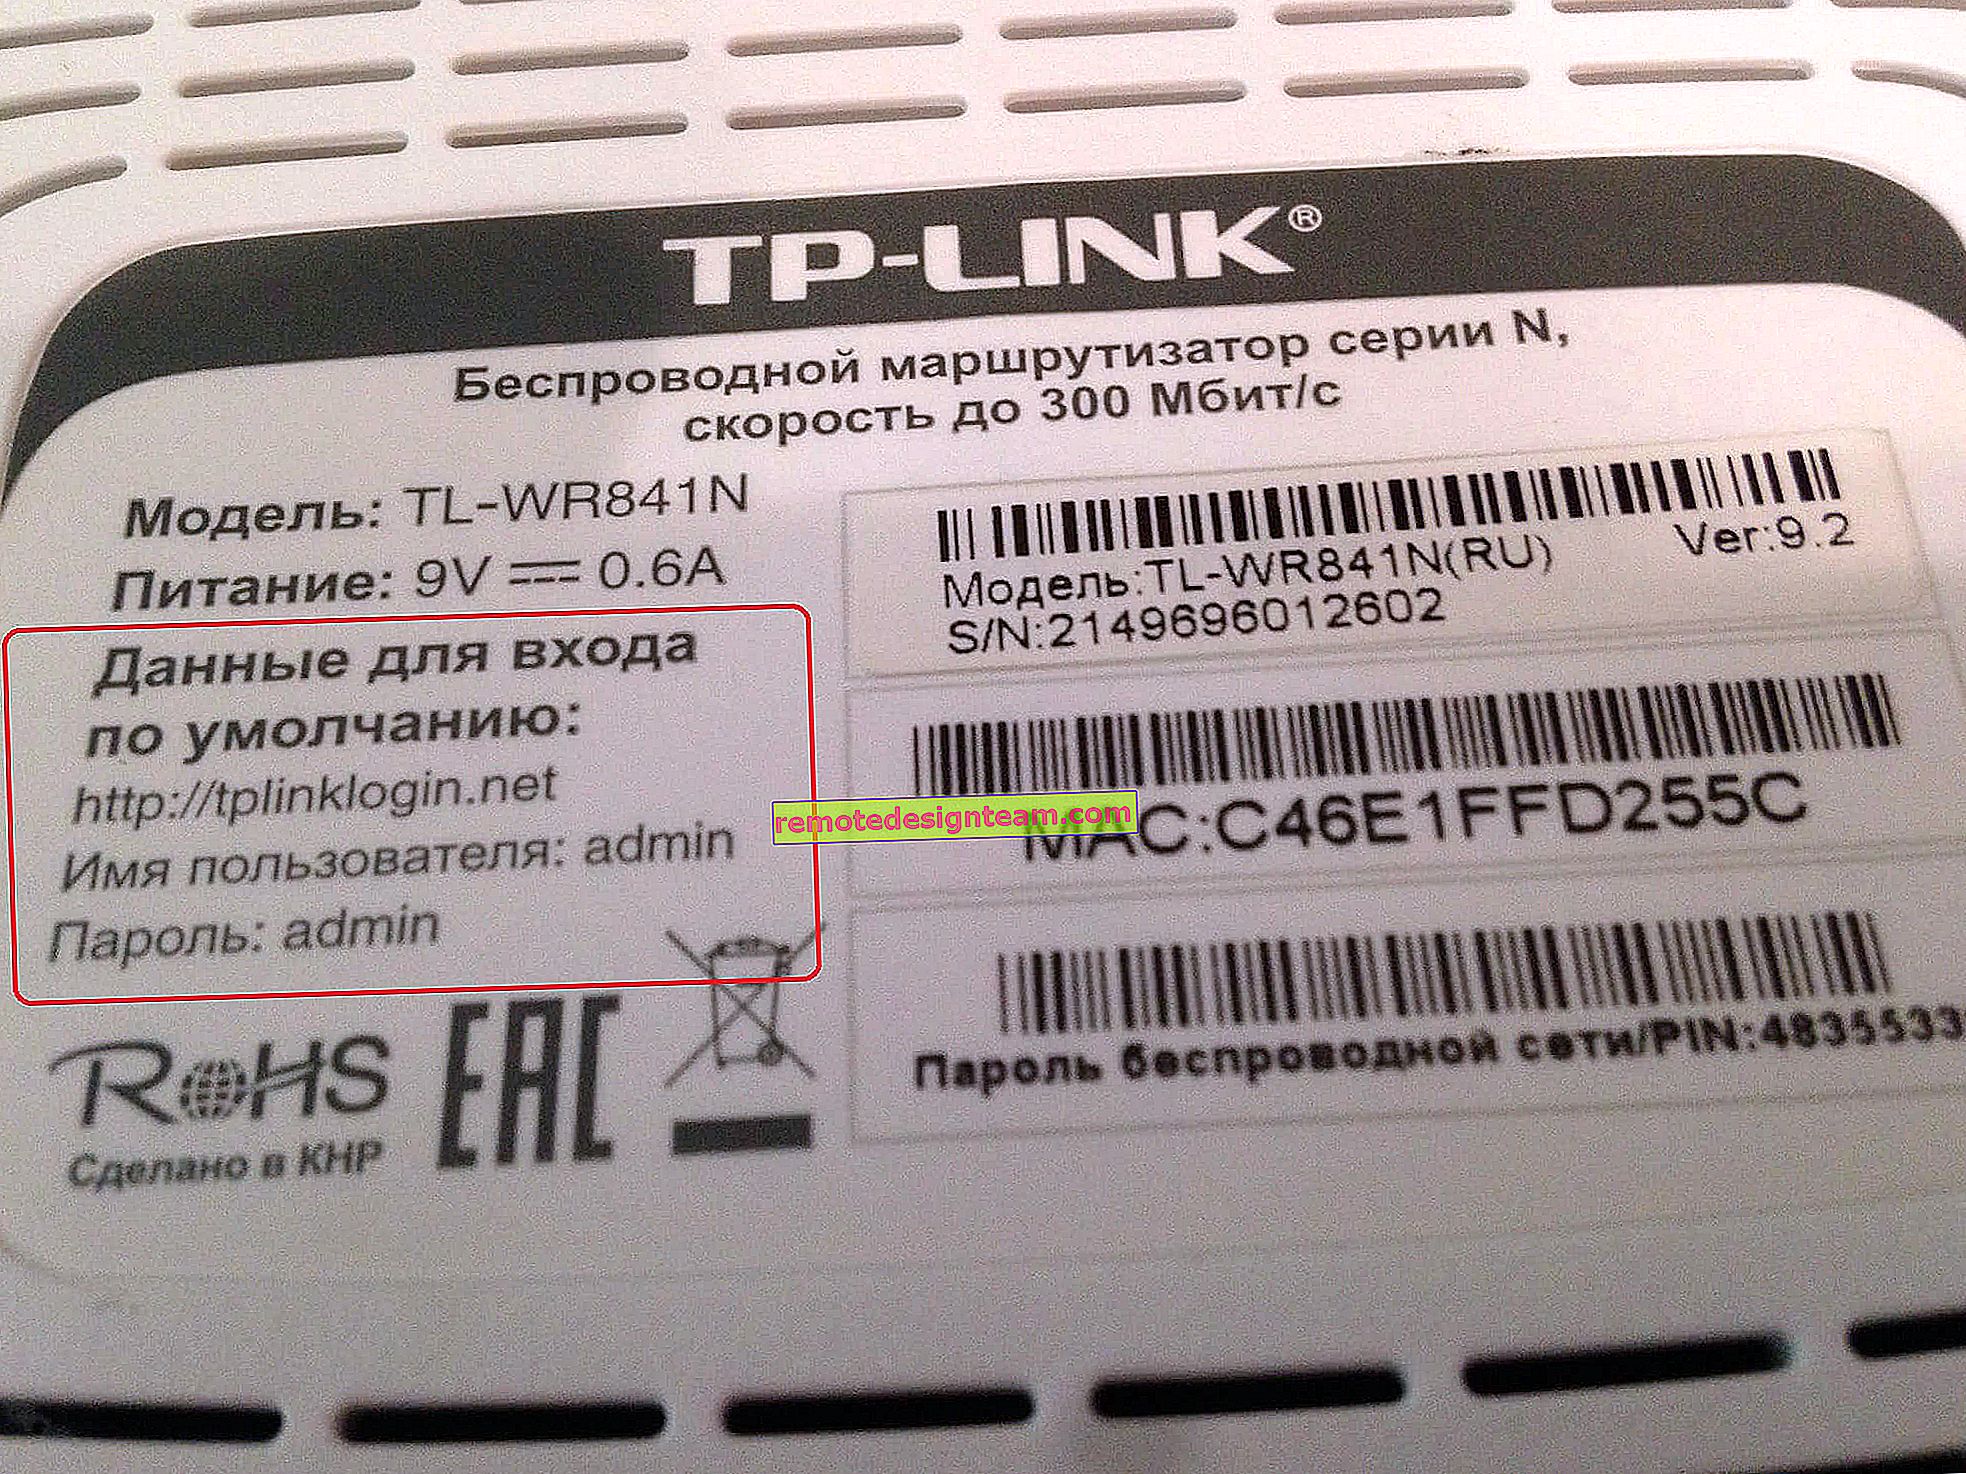 Bagaimana cara mengubah kata sandi pada router Wi-Fi Tp-link TL-WR841N?